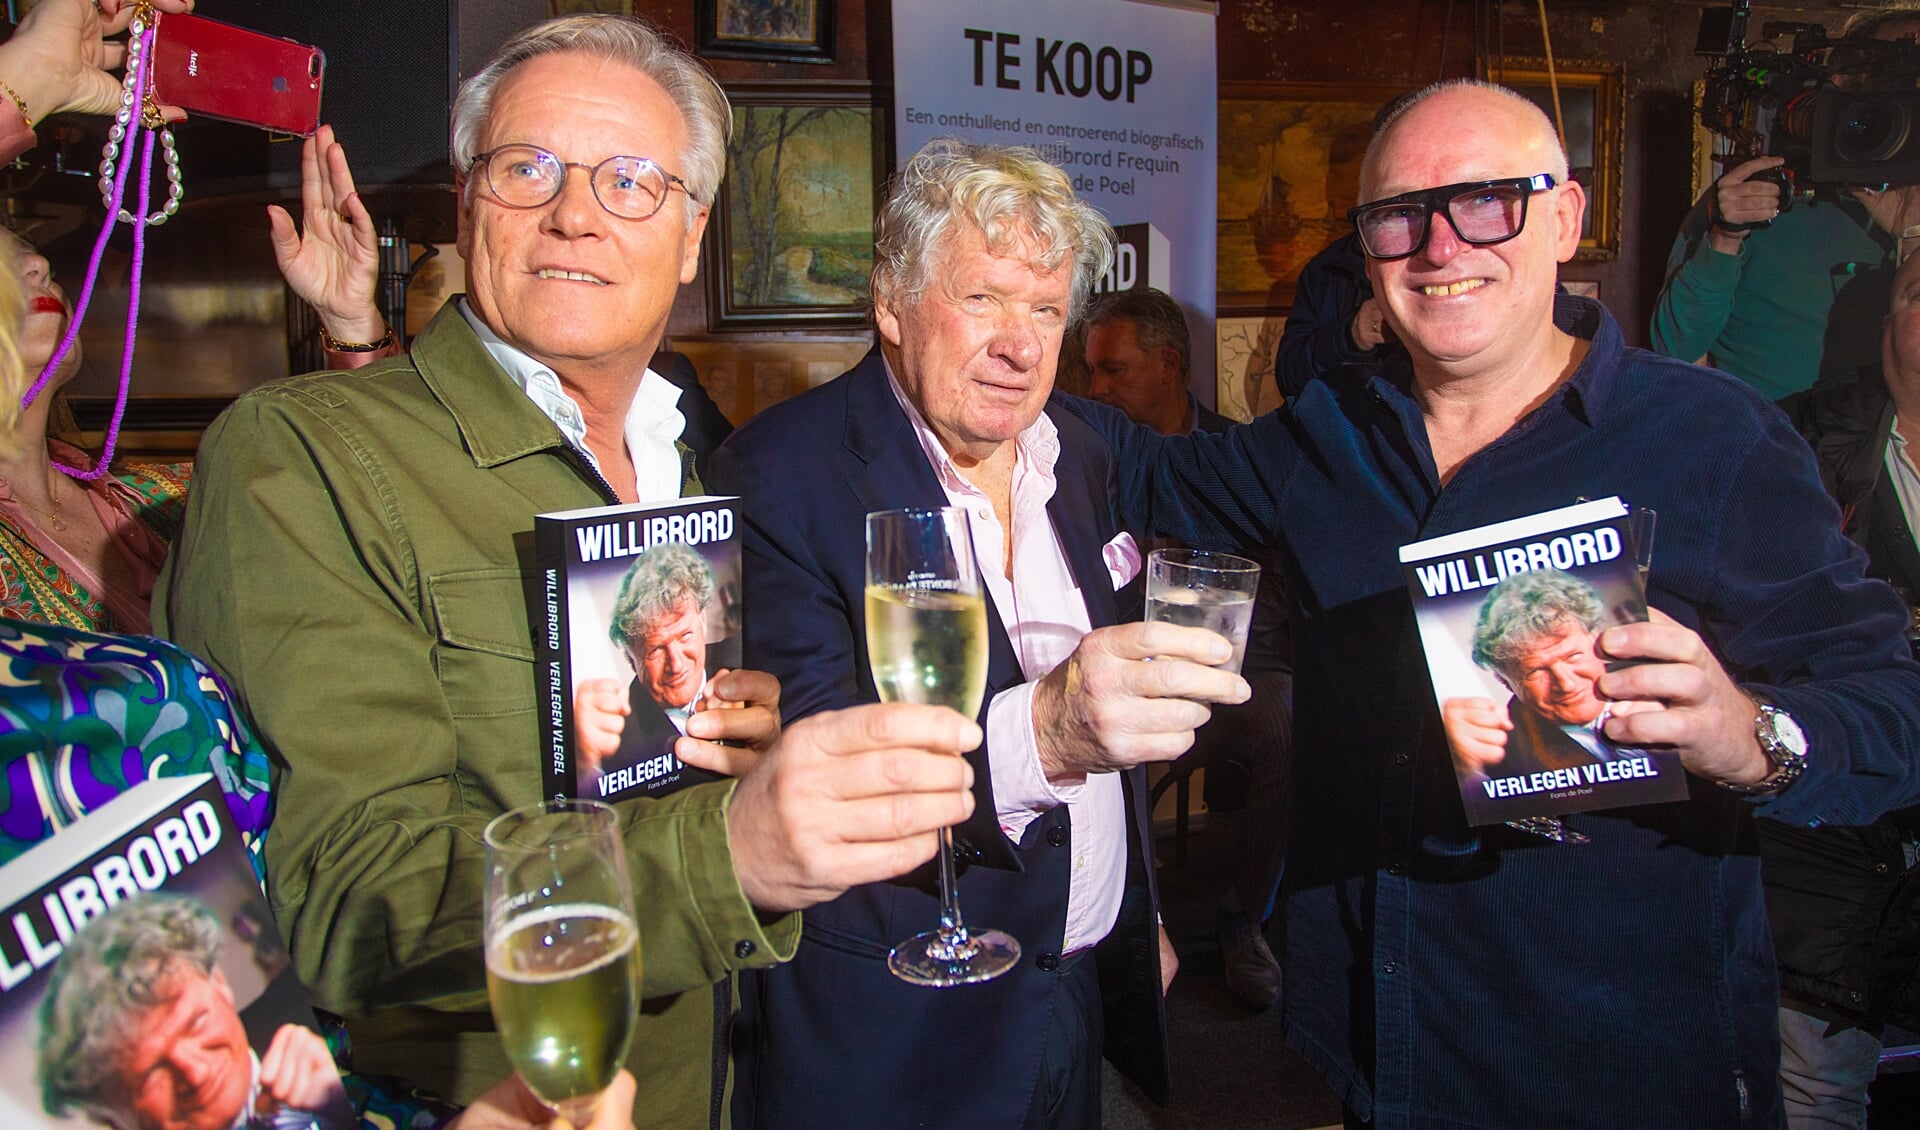 Fons van der Poel, Willibrord Frequin en René van der Gijp met het boek Willibrord, verlegen vlegel. 